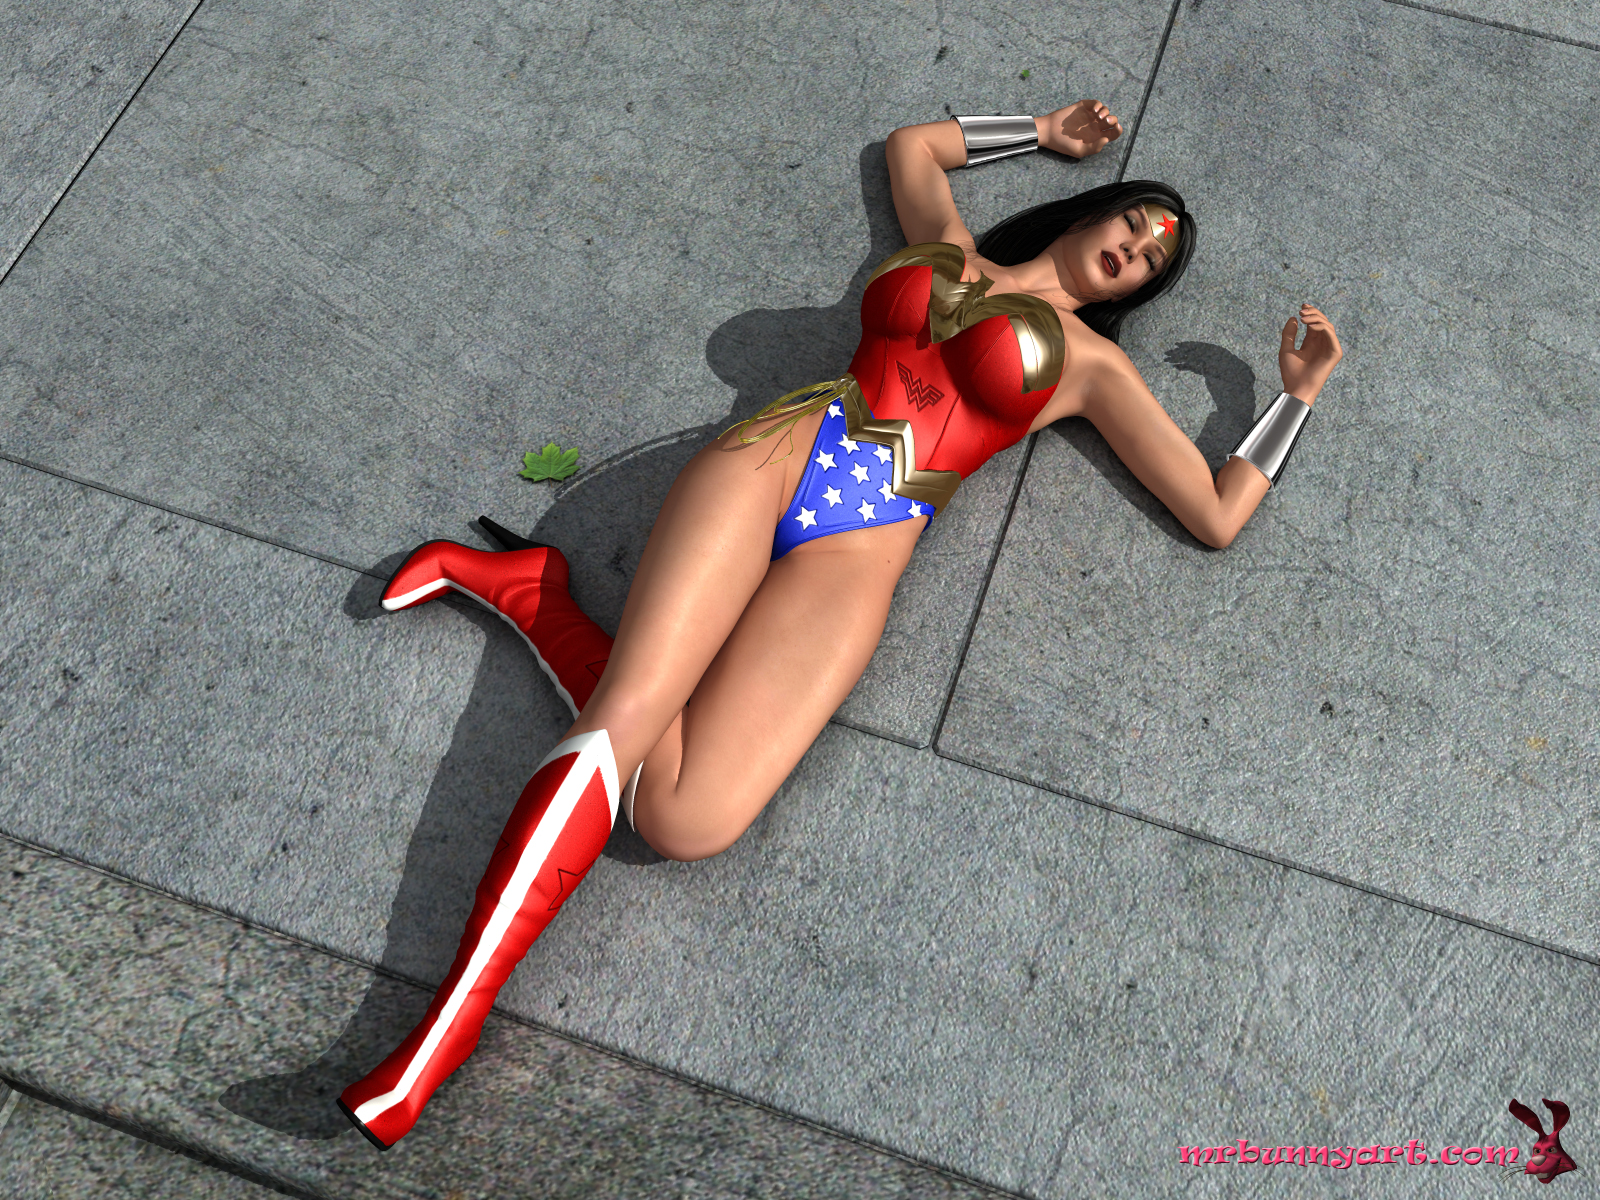 MrBunnyArt – Wonder Woman Vs Cain